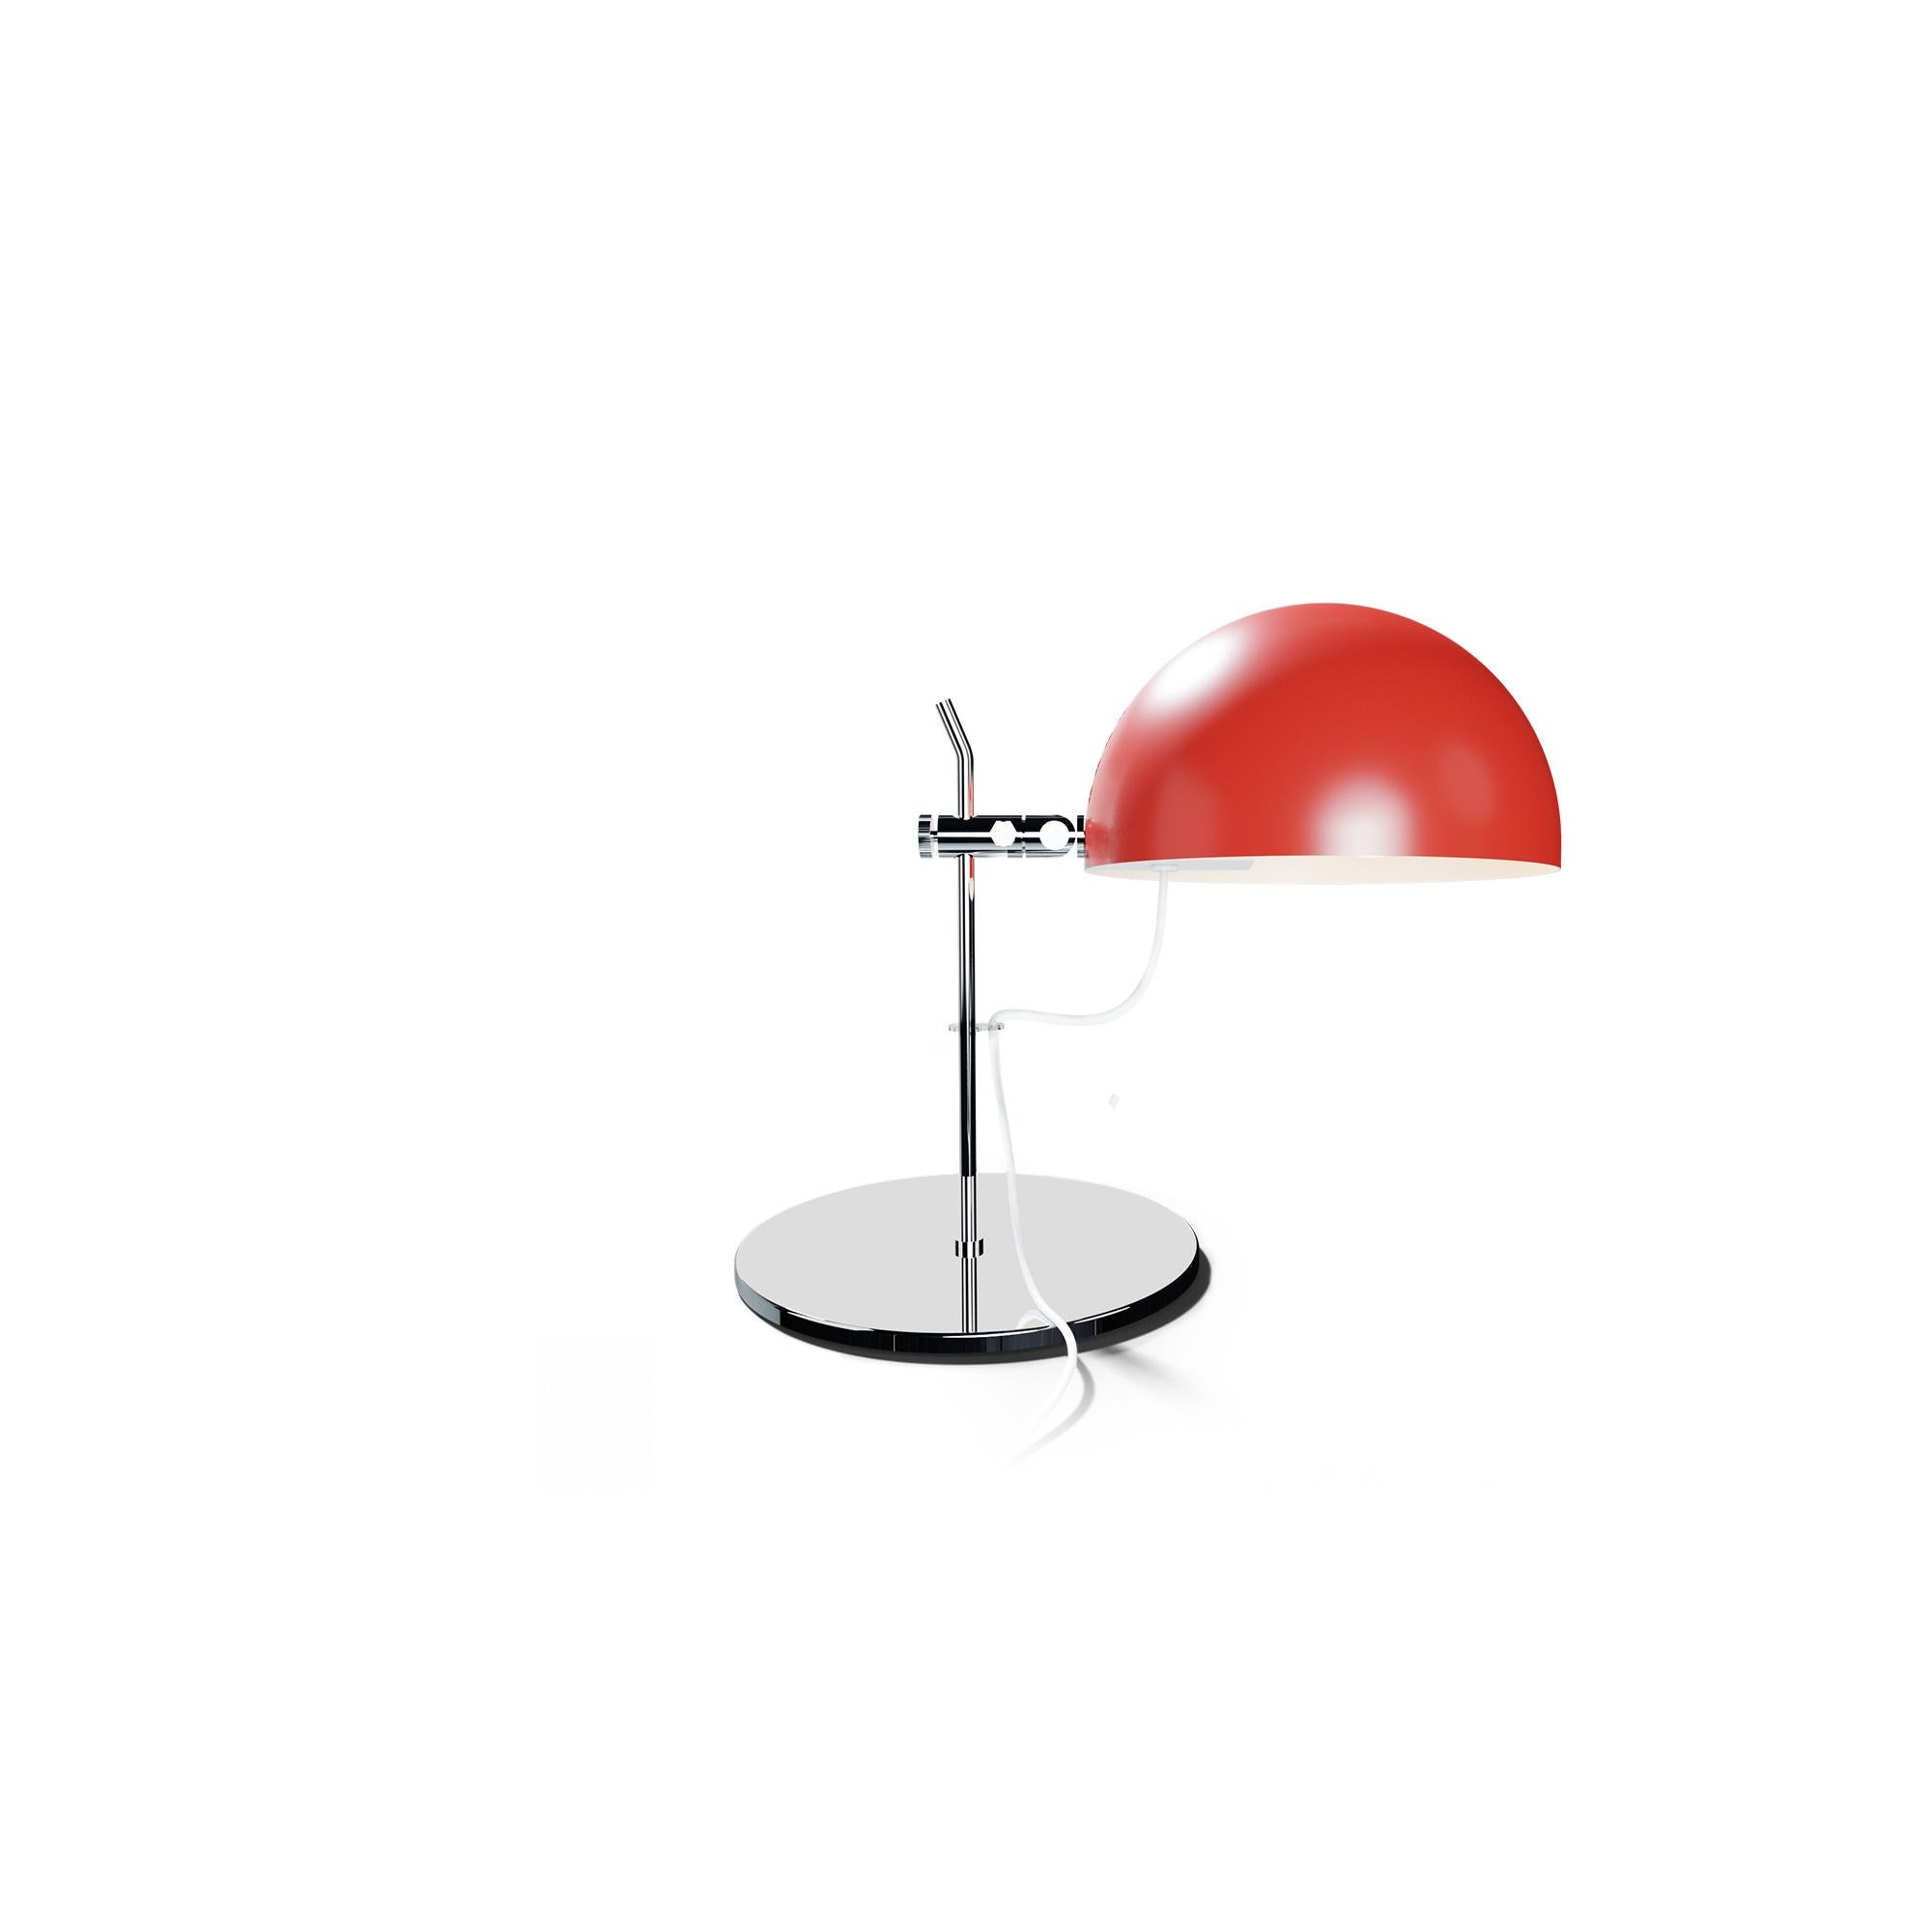 Alain Richard 'A22' Desk Lamp in Orange for Disderot For Sale 1